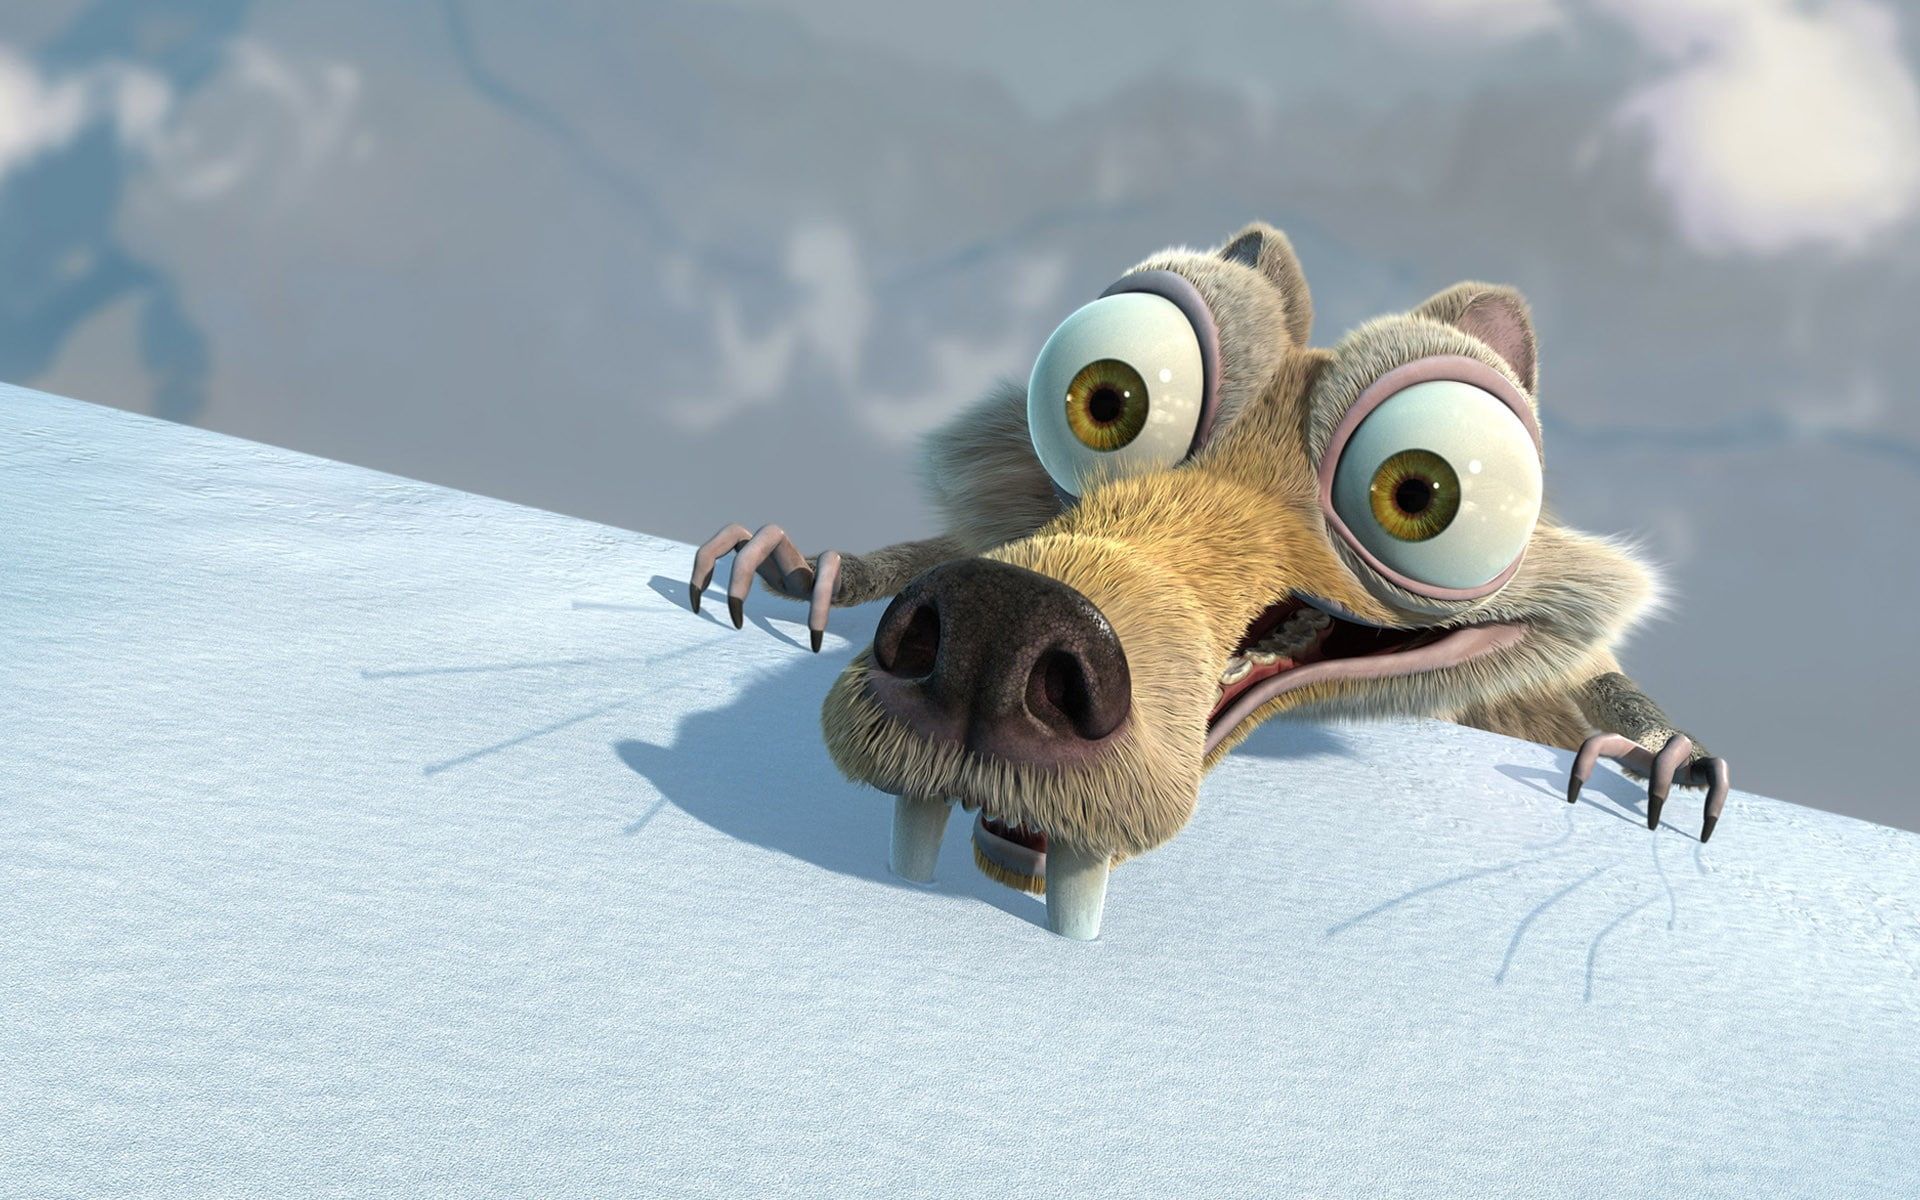 Ice Age #squirrel Ice Age: The Meltdown #Scrat #movies P #wallpaper #hdwa. Papéis de parede engraçados, Papel de parede infantil, Papel de parede autocolante